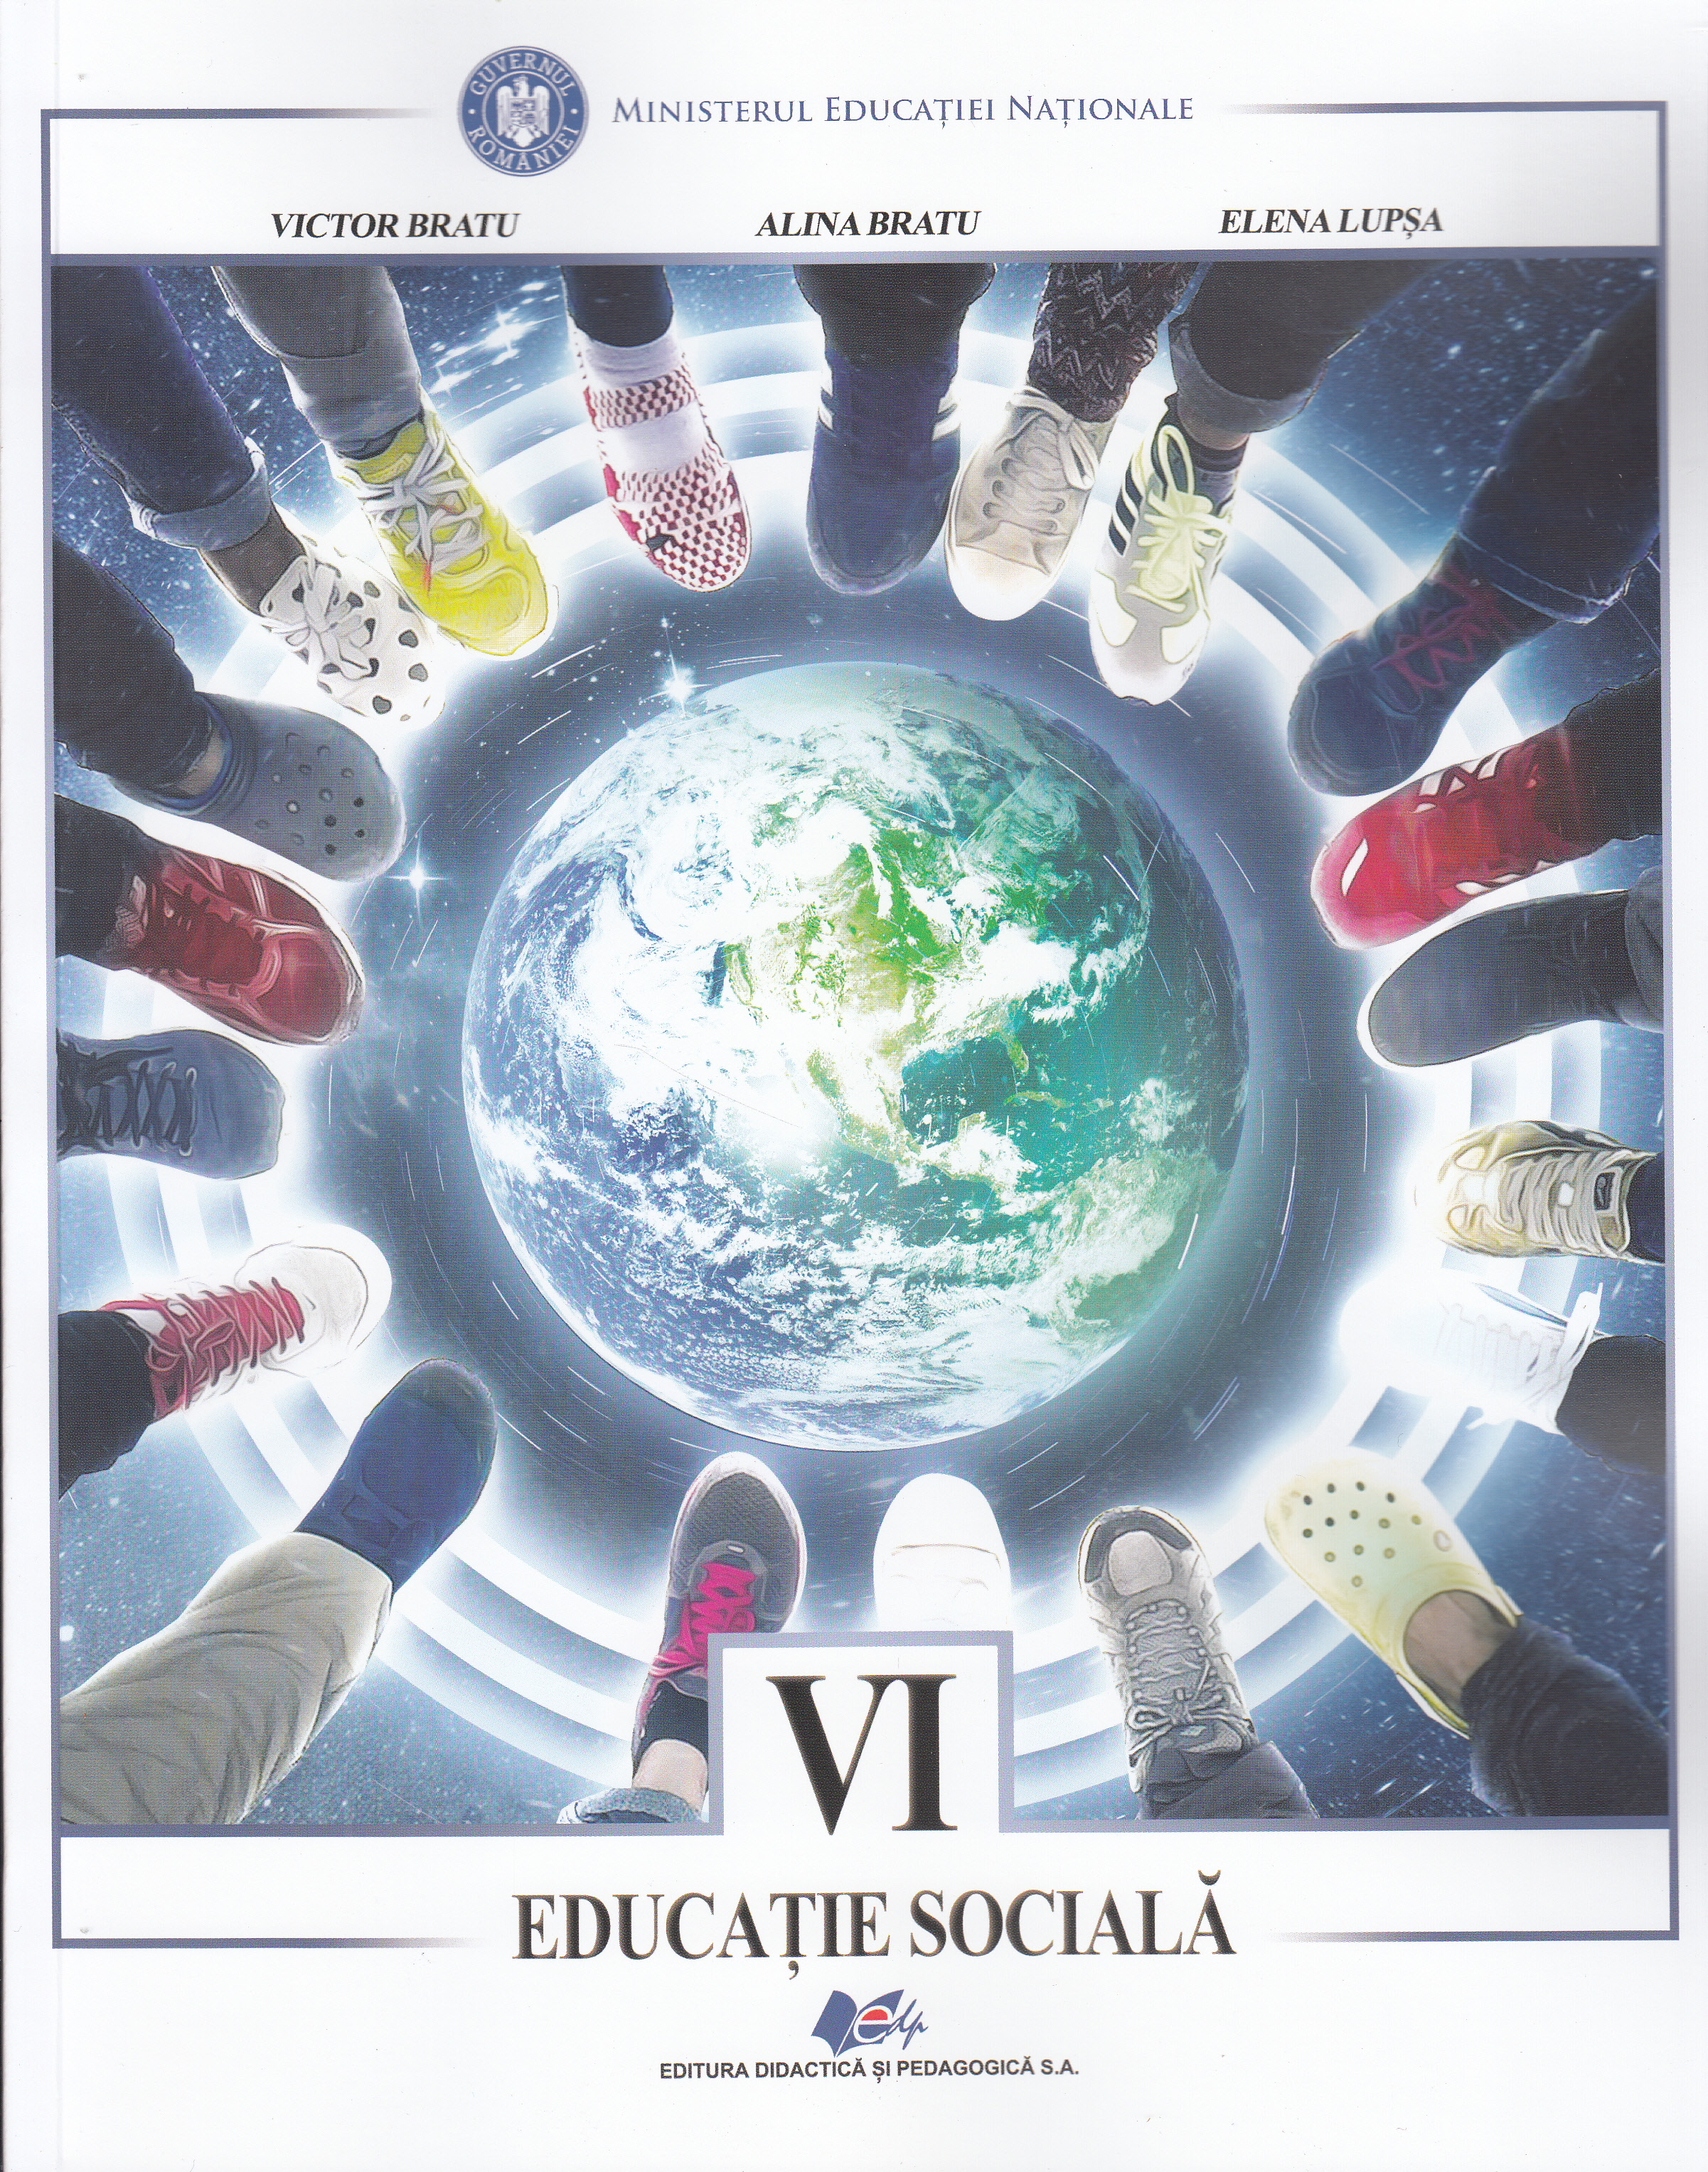 Educatie sociala - Clasa 6 - Victor Bratu, Alina Bratu, Elena Lupsa